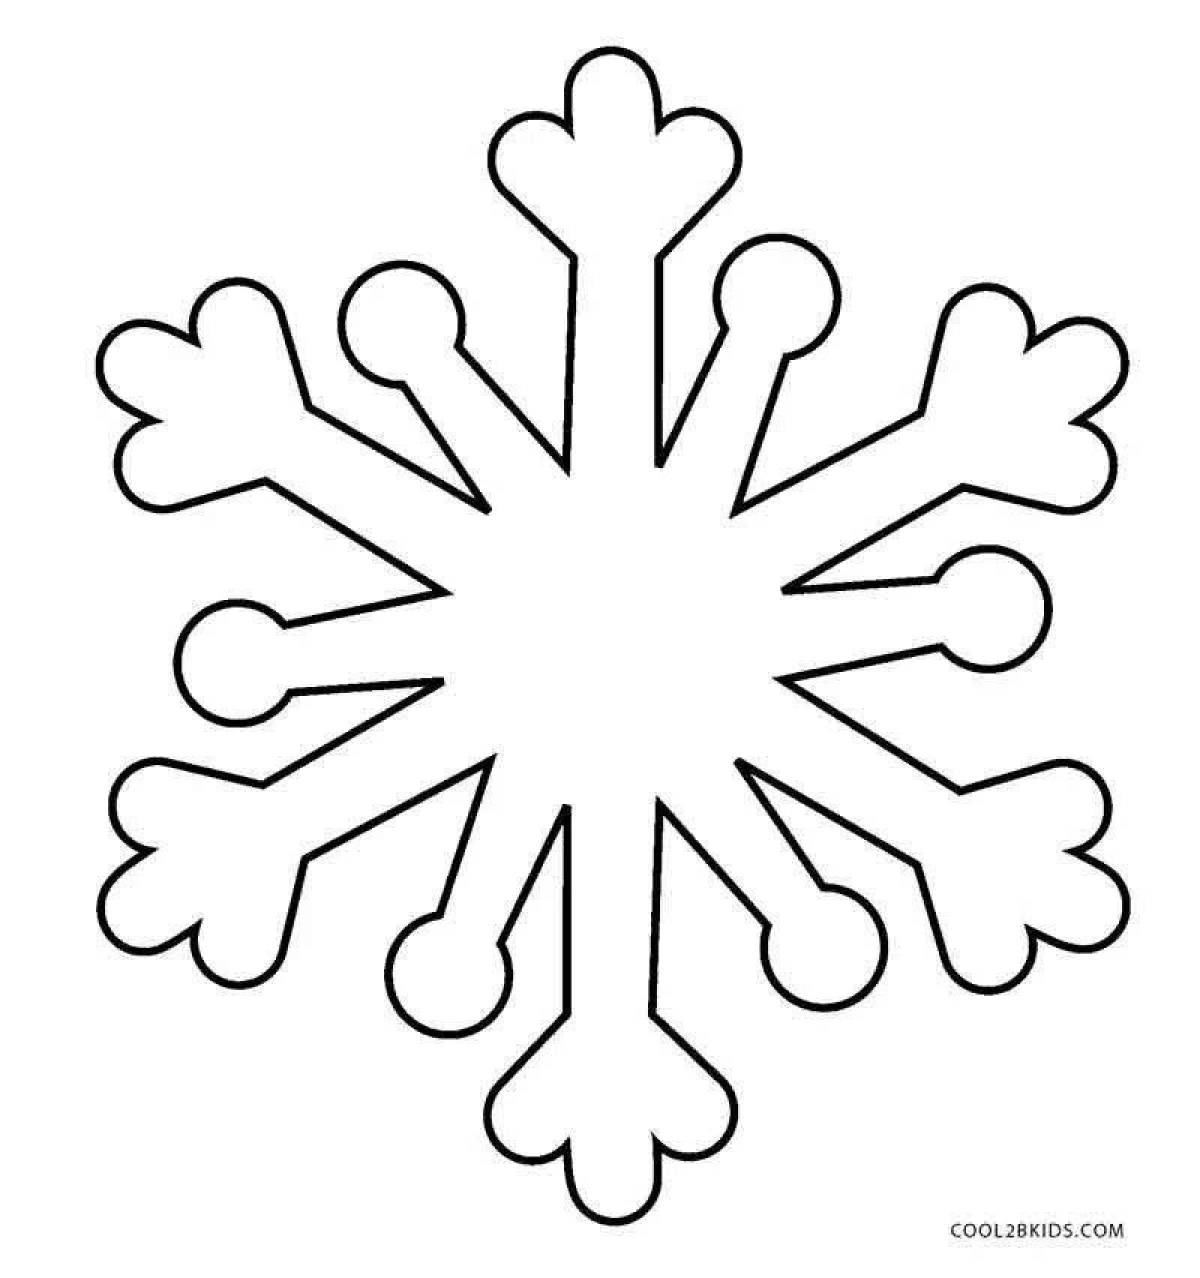 Живая раскраска снежинка для детей 3-4 лет